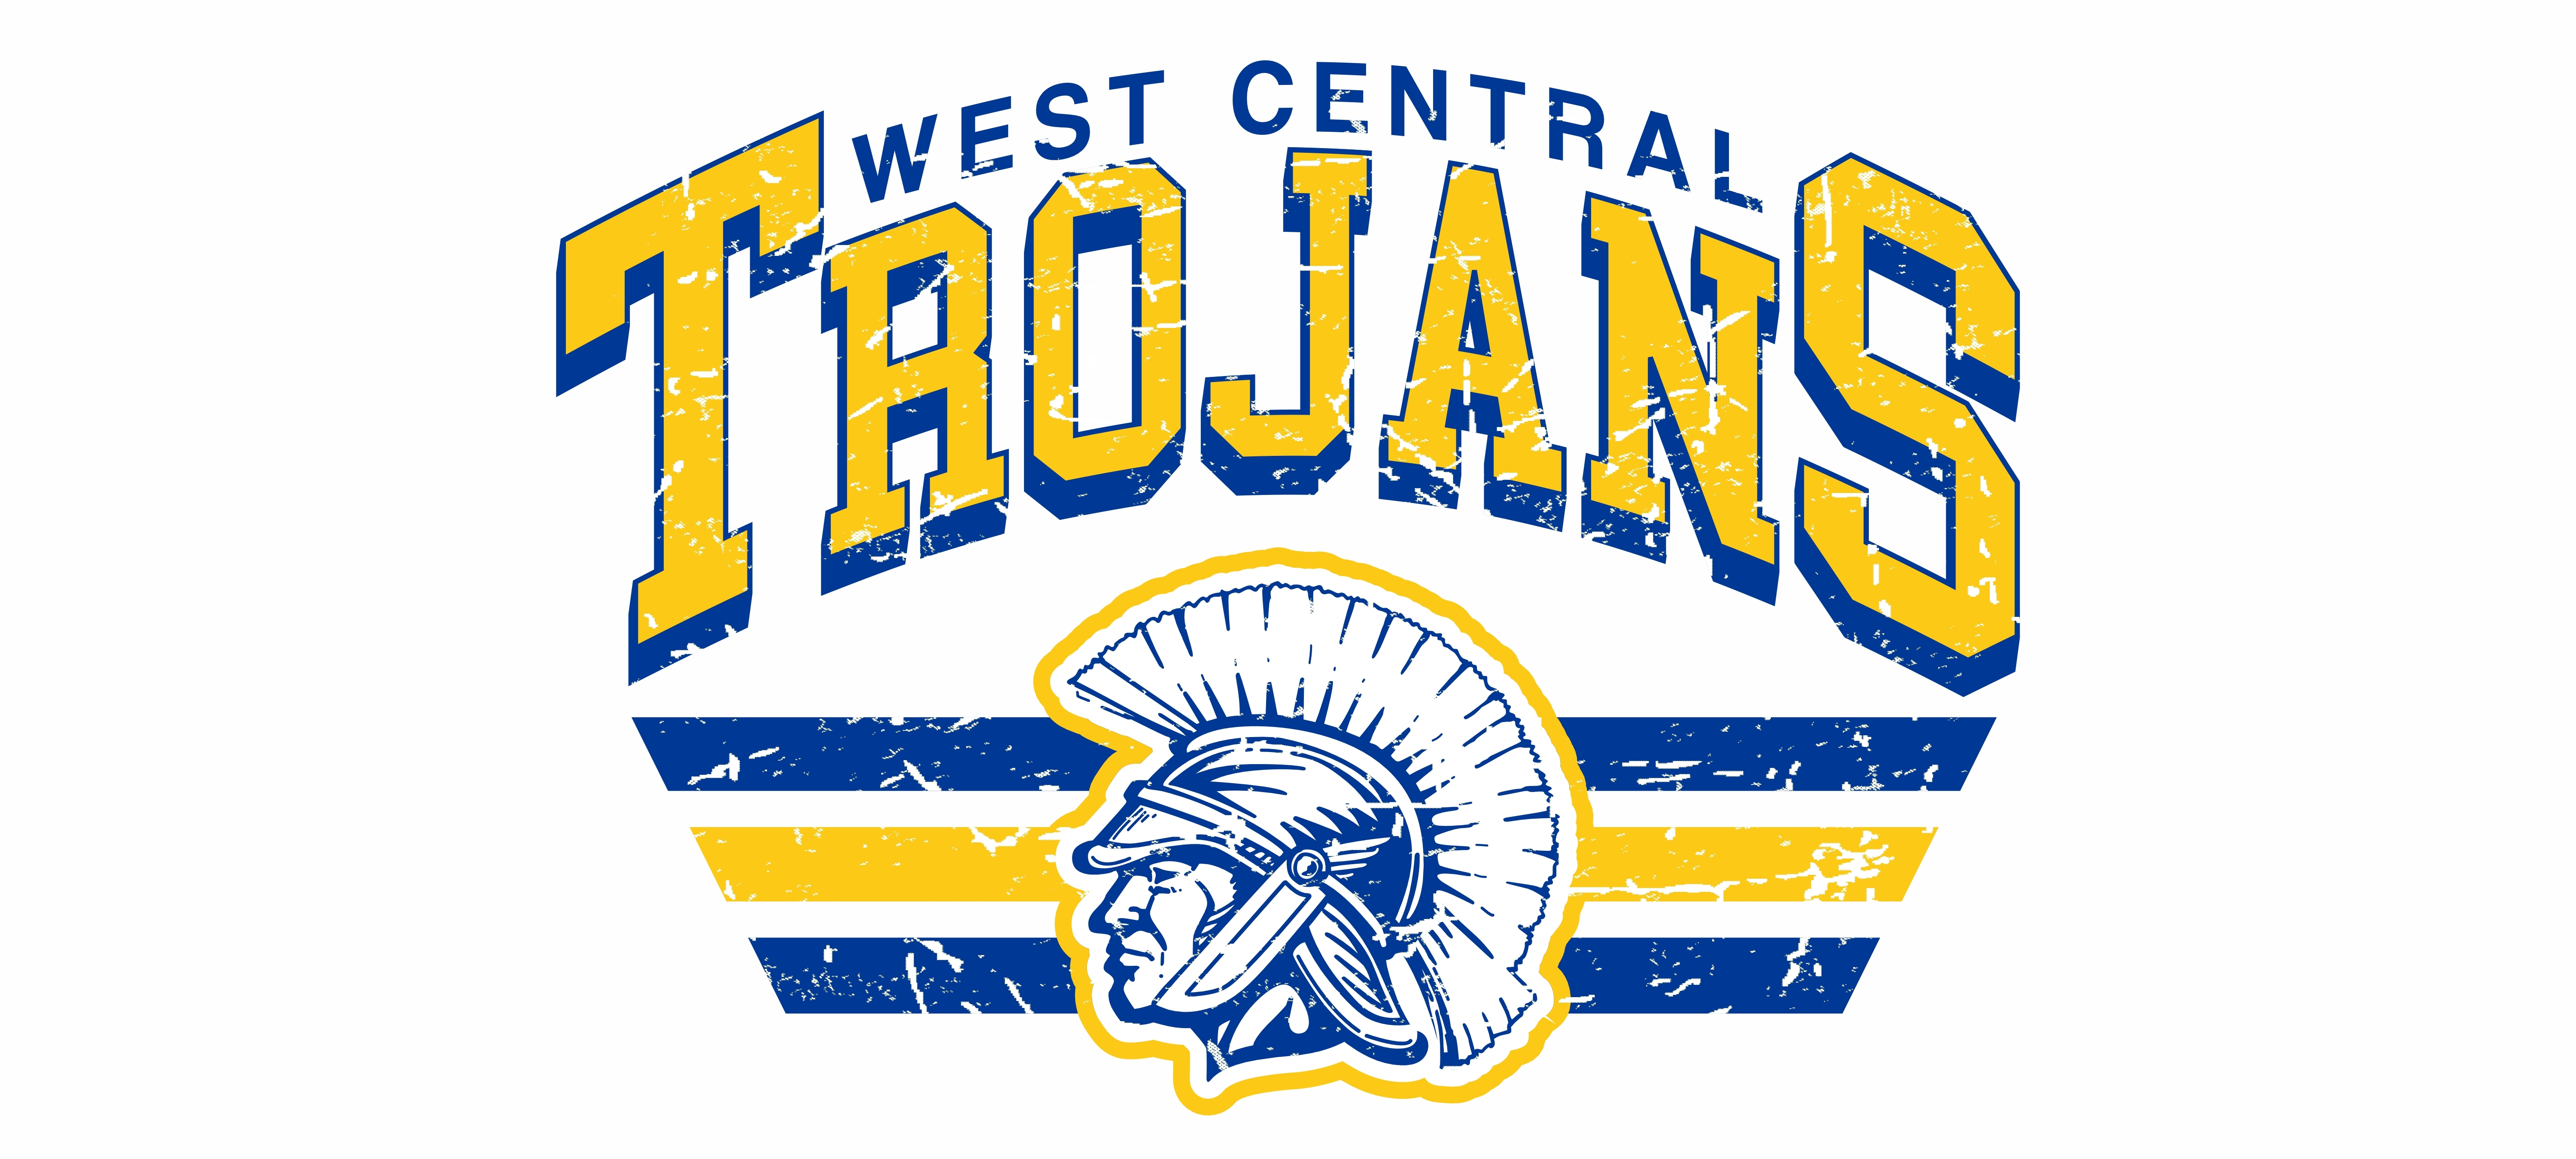 West Central Trojans